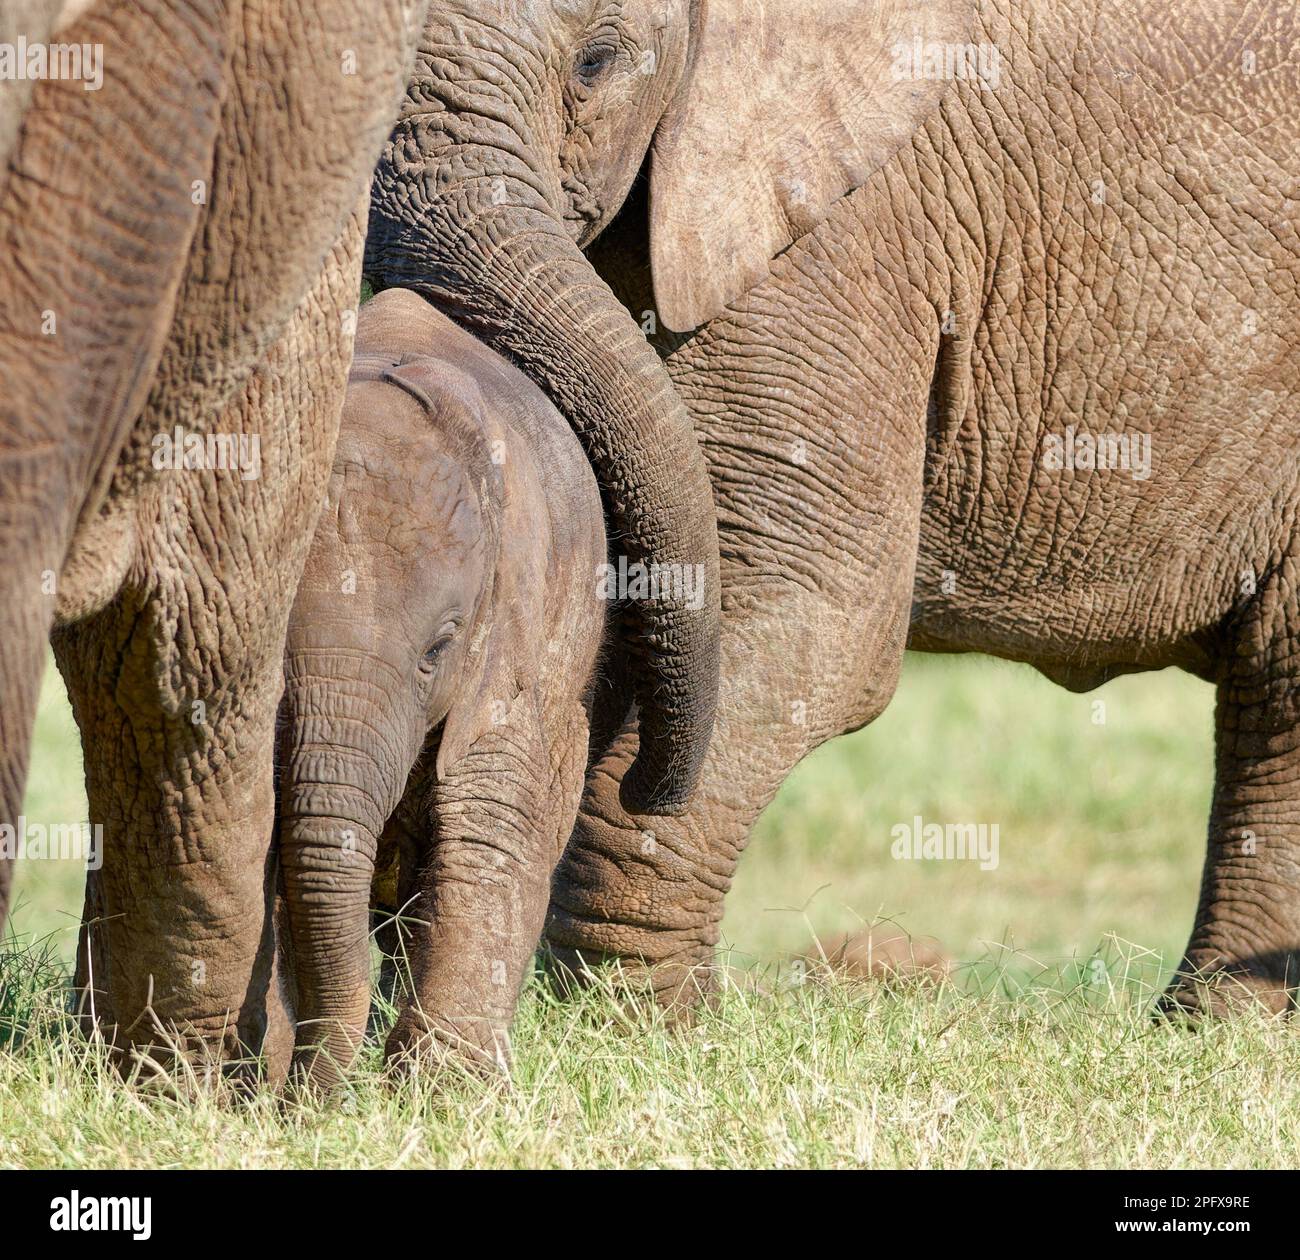 Éléphants de brousse africains (Loxodonta africana), bébé masculin avec jeunes parmi le troupeau, exposition d'affection, NP éléphant Addo, Cap oriental, Afrique du Sud, Banque D'Images